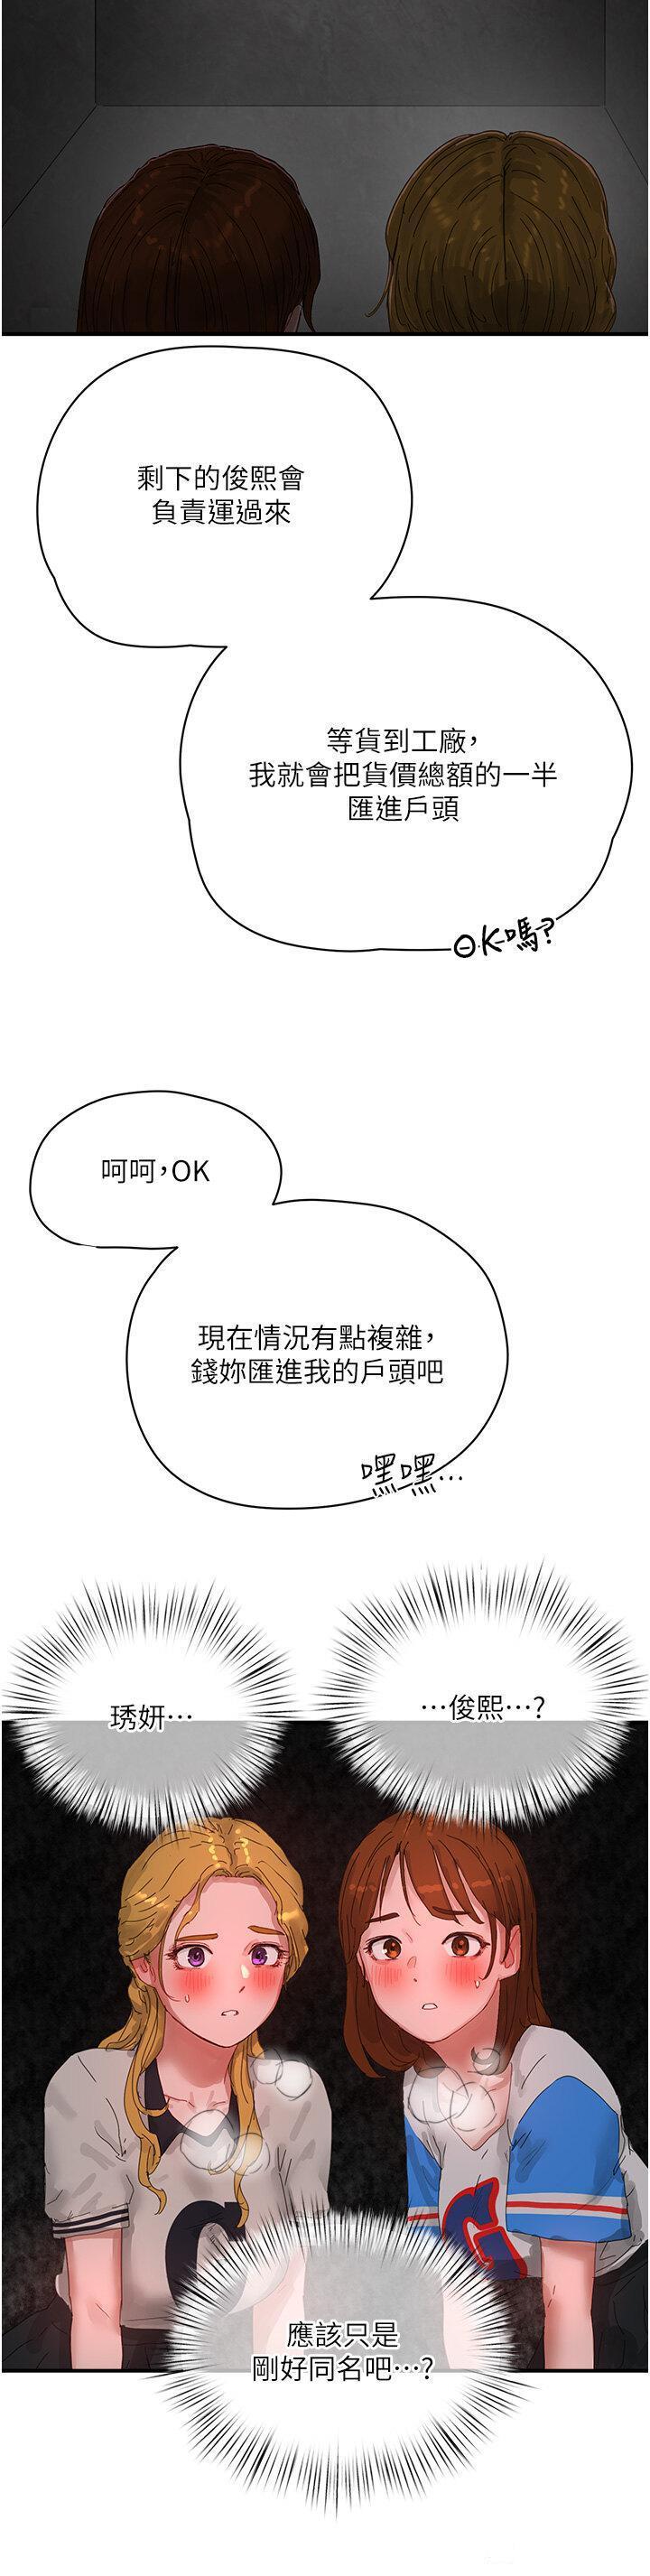 韩国污漫画 夏日深處 第82话_危险的黄色交易 20